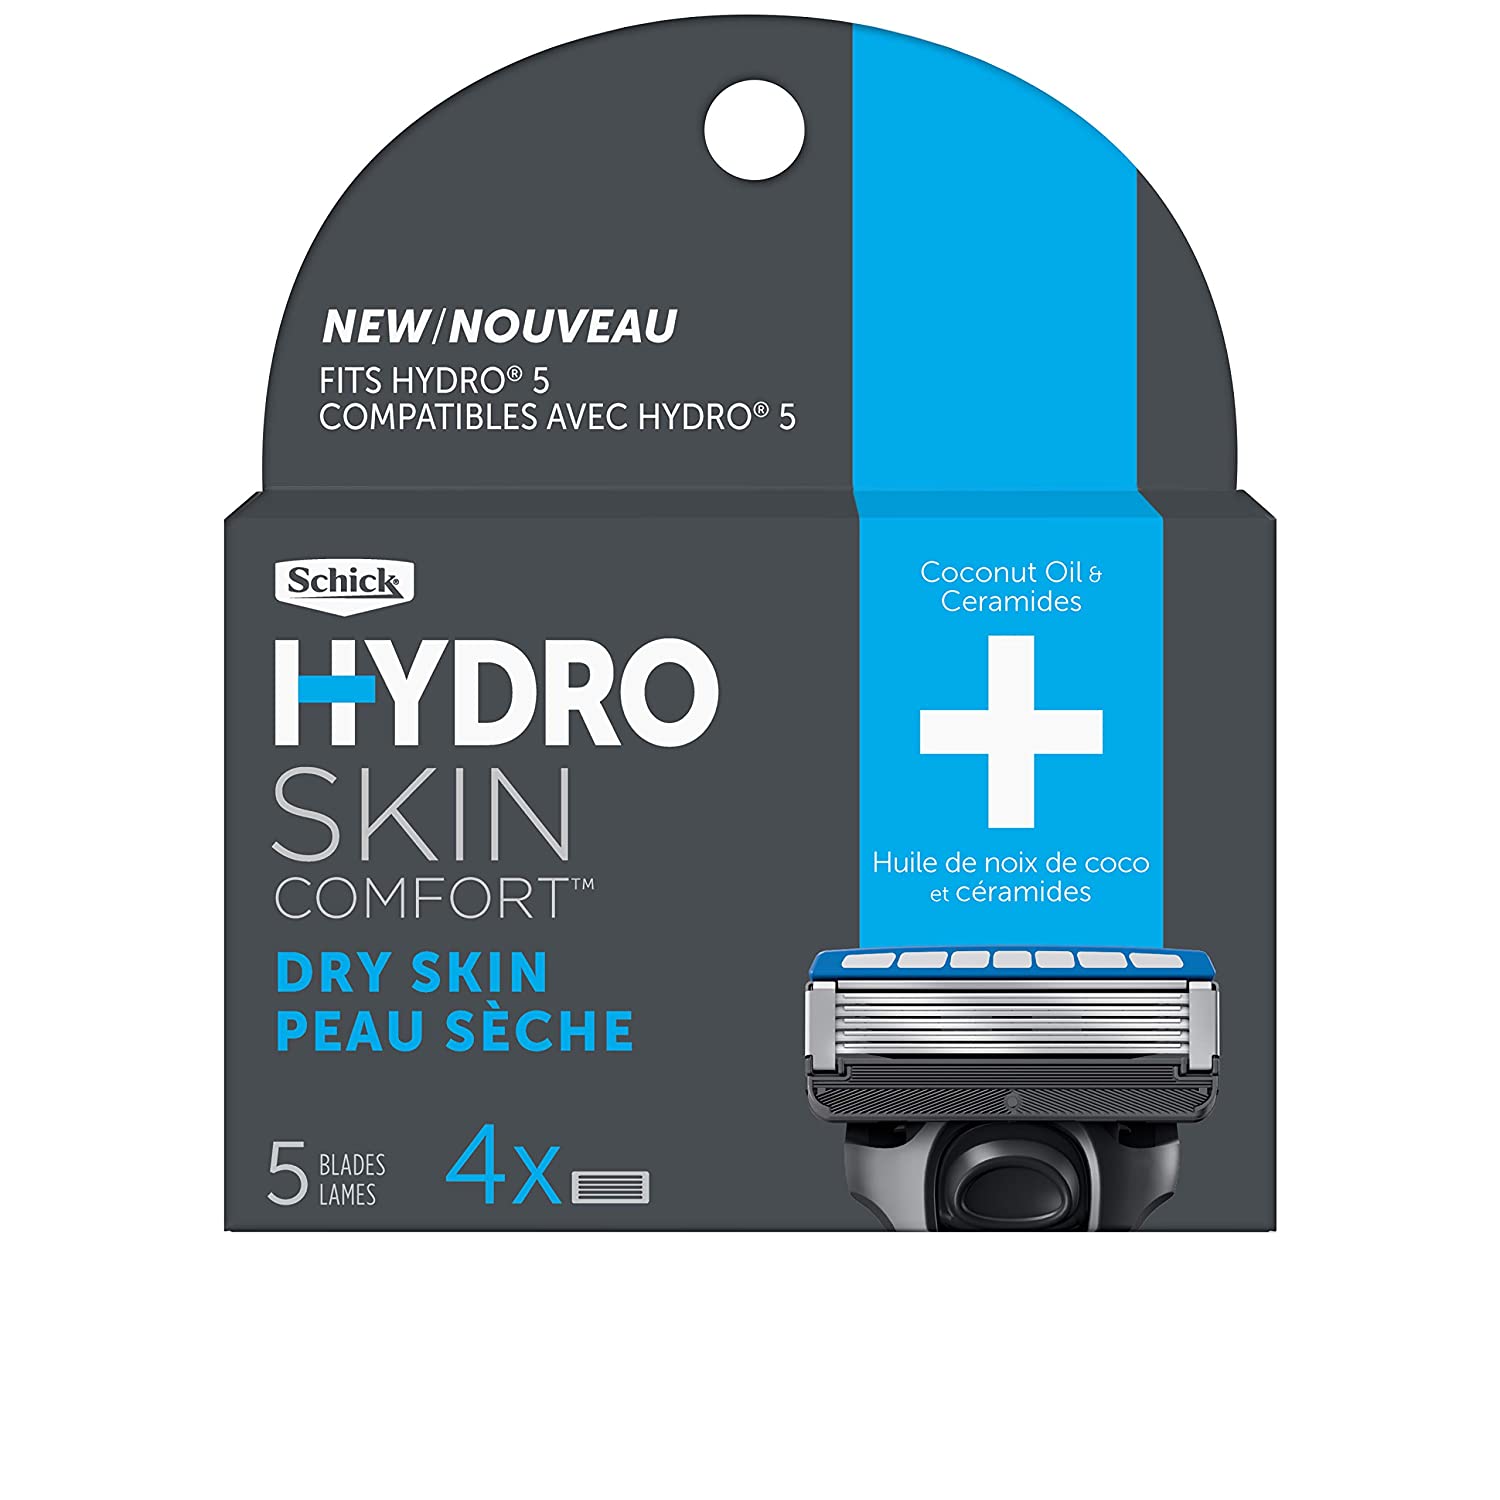 4-Count Schick Hydro 5 Sense Hydrate Razor Refills $5.95 at Amazon